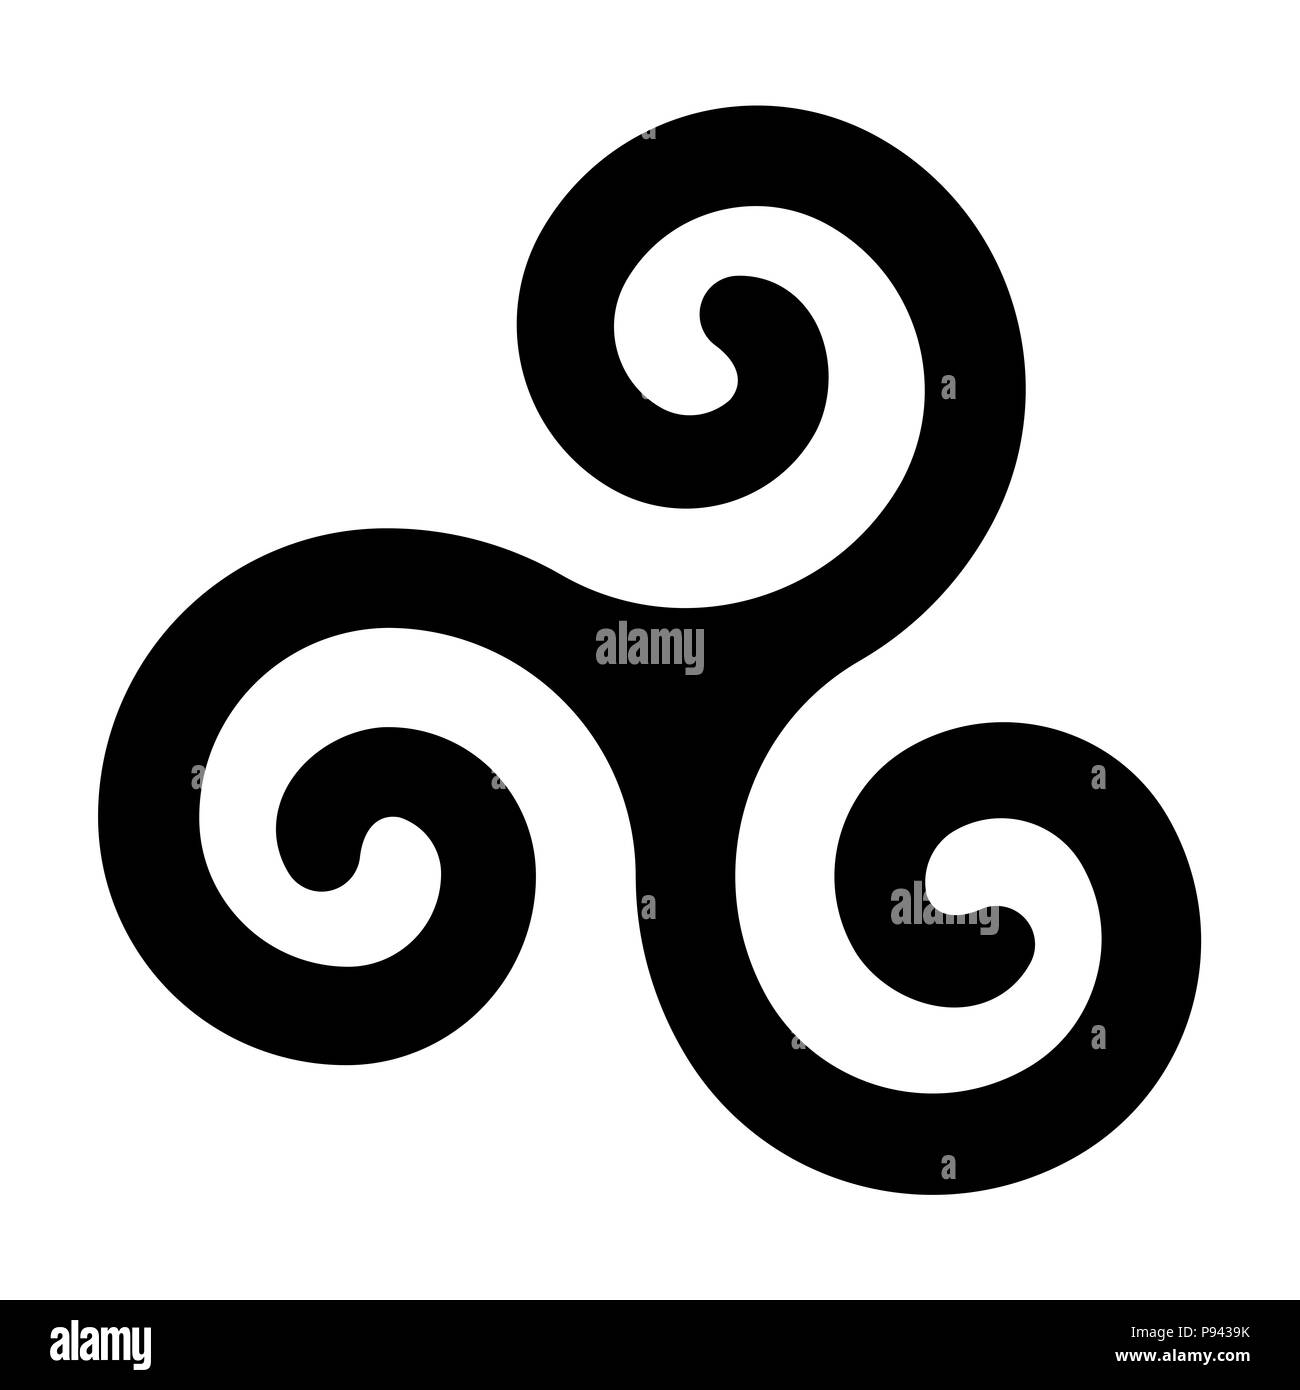 Spirale triskele celtique noir sur fond blanc. Le Triskèle. Un motif composé d'une spirale triple présentant une symétrie rotationnelle. Twisted spirales. Banque D'Images